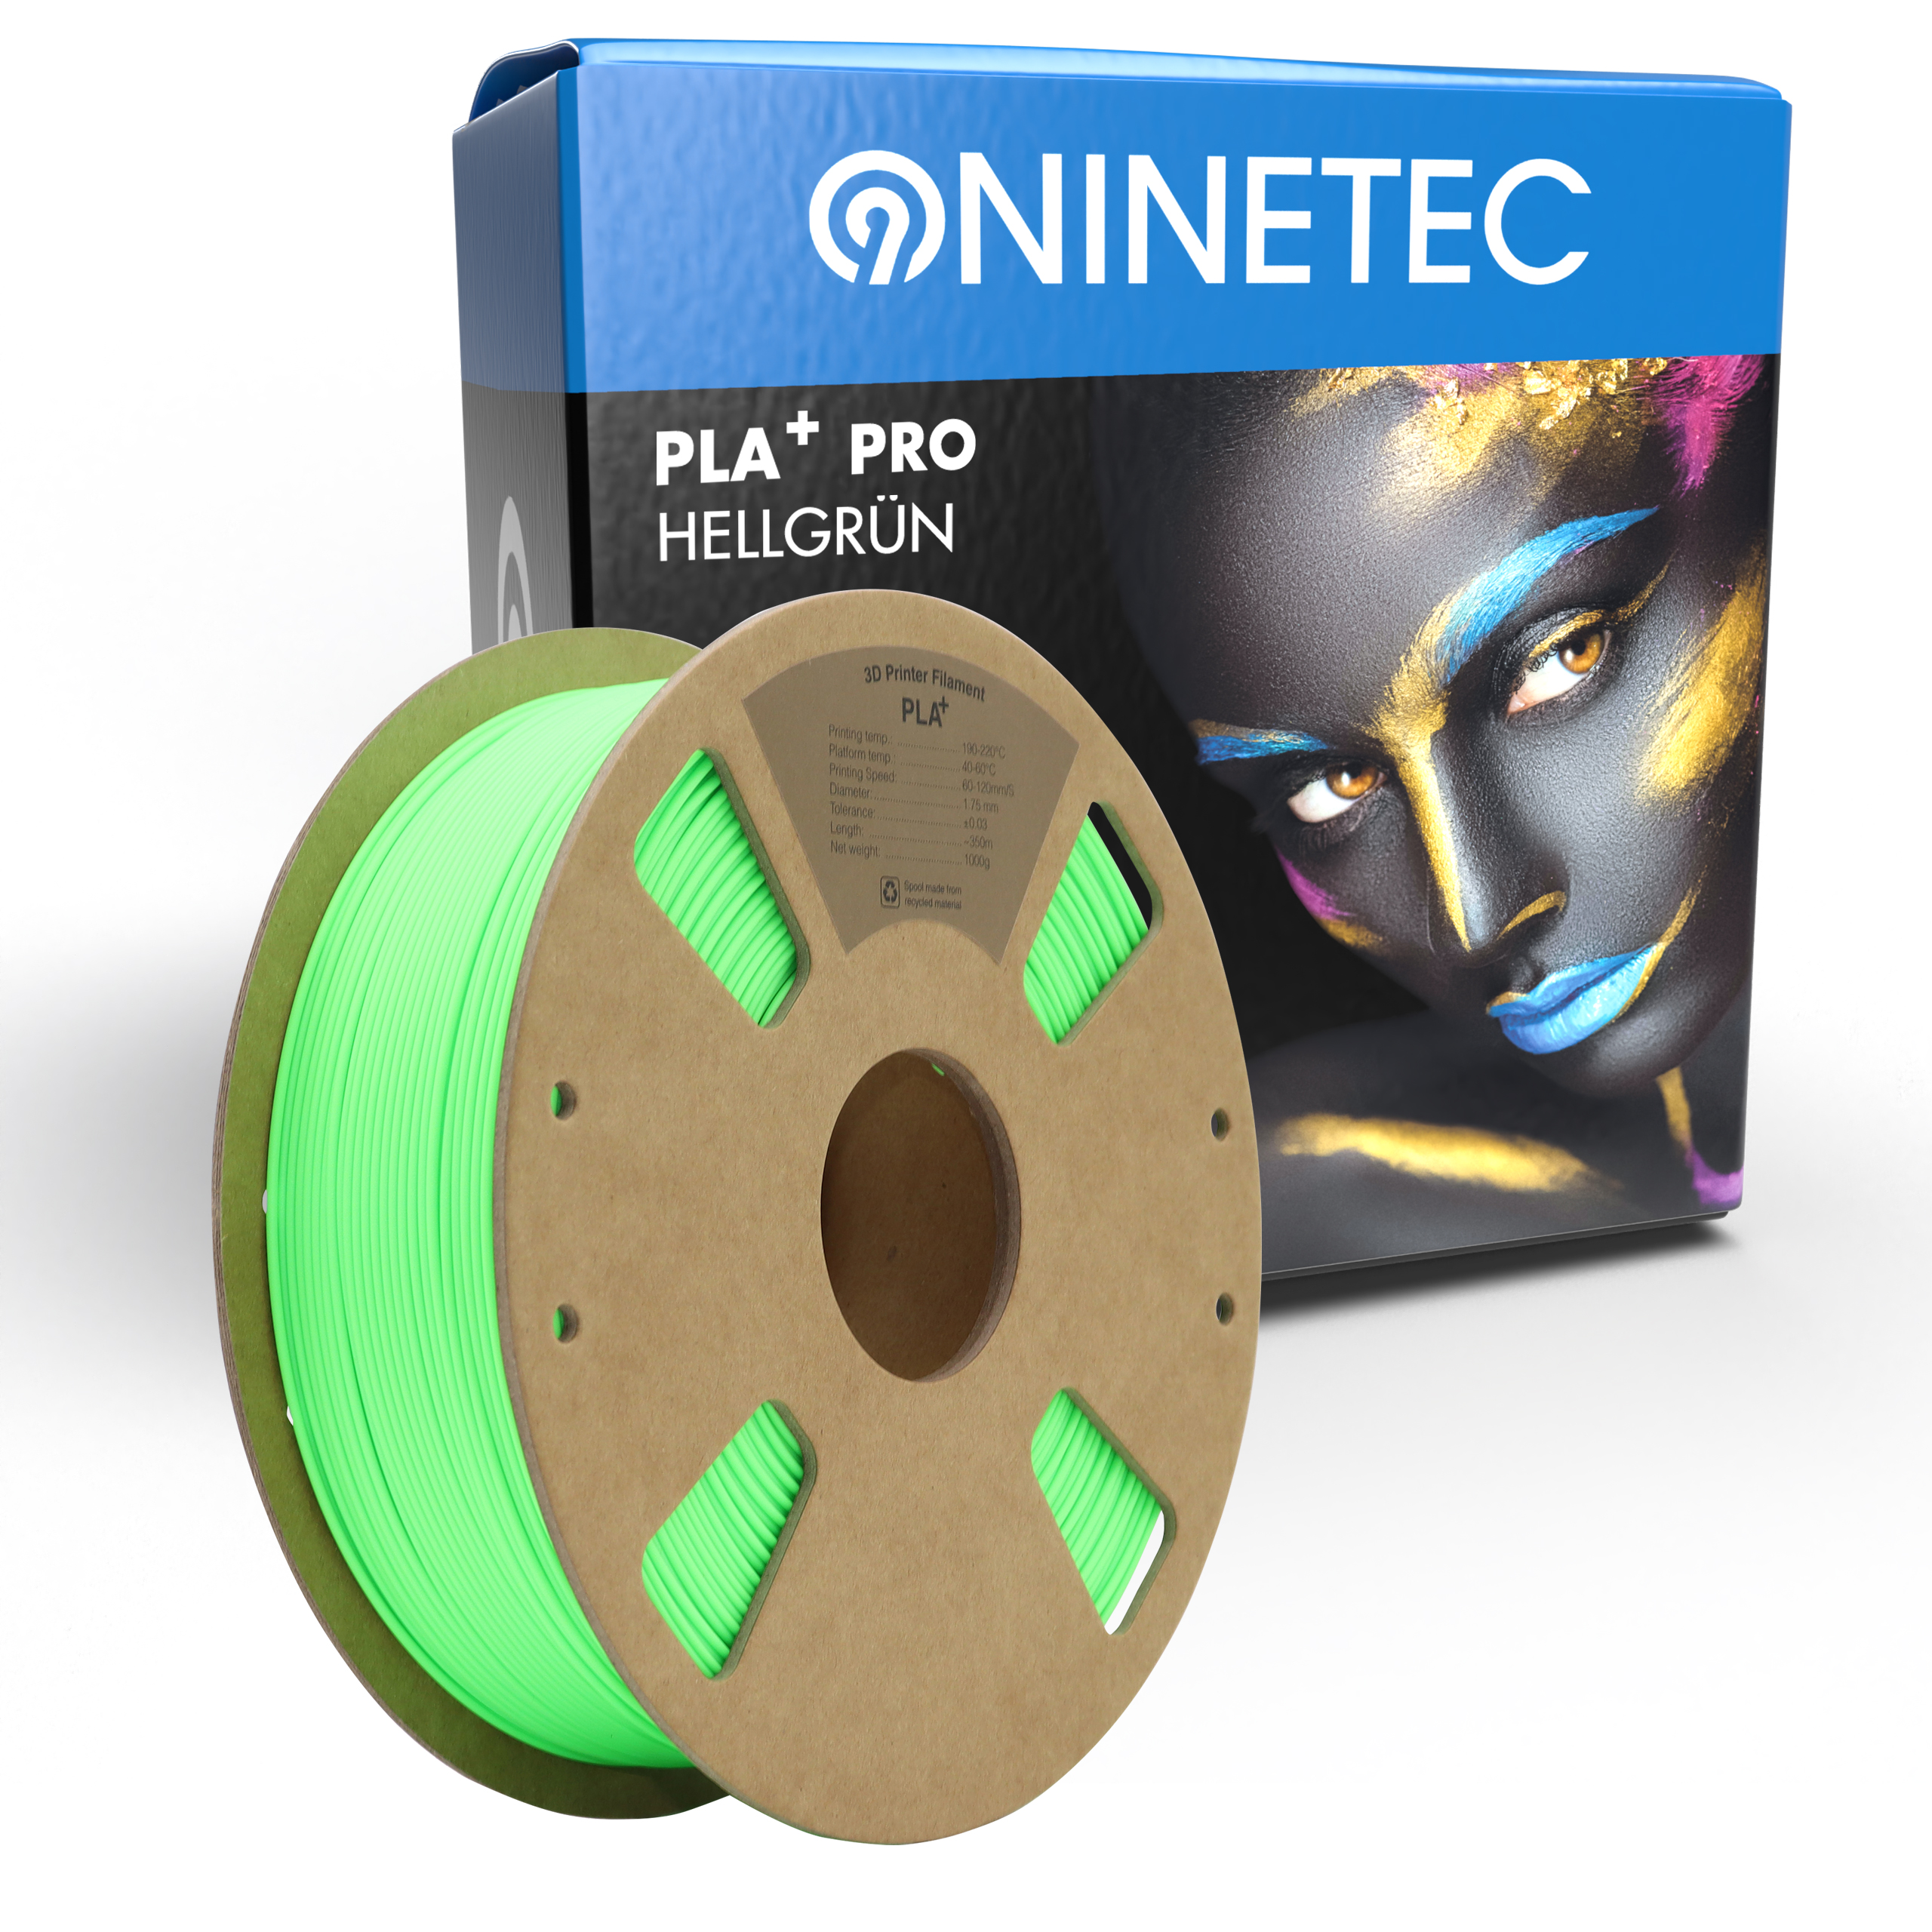 PRO Filament PLA+ Hellgrün NINETEC